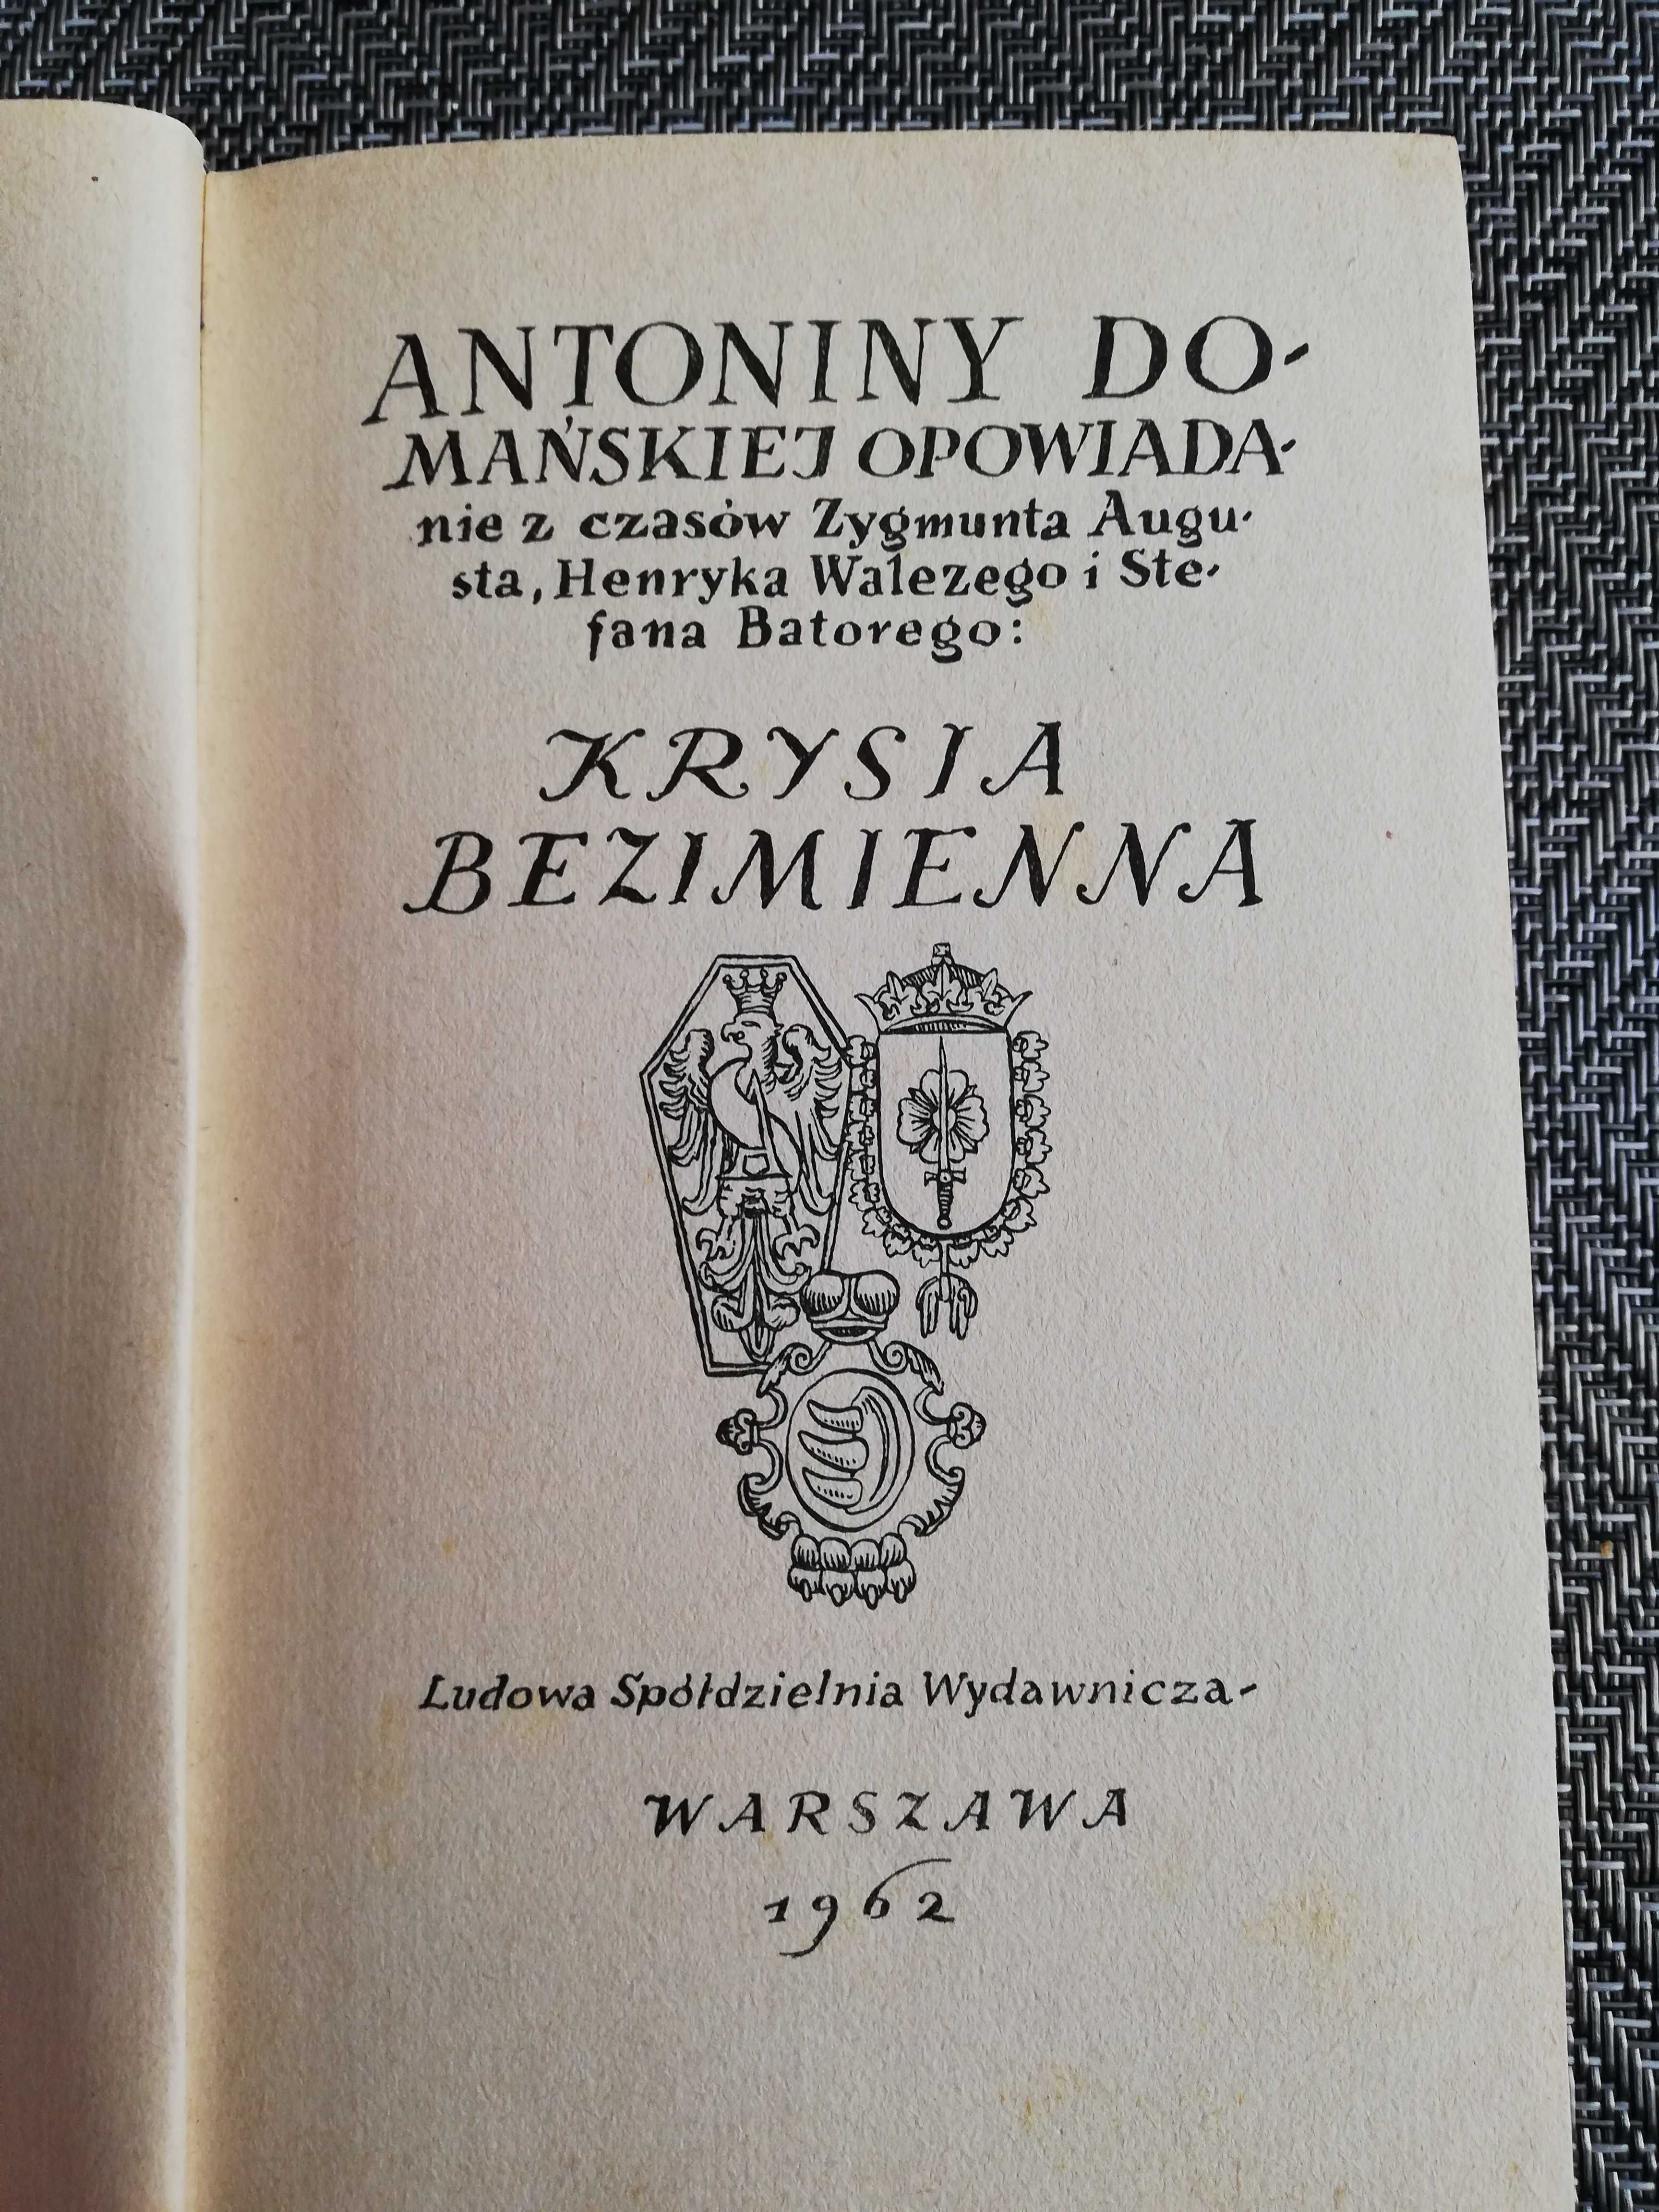 Krysia bezimienna - Antonina Domańska - wydanie z 1962 roku